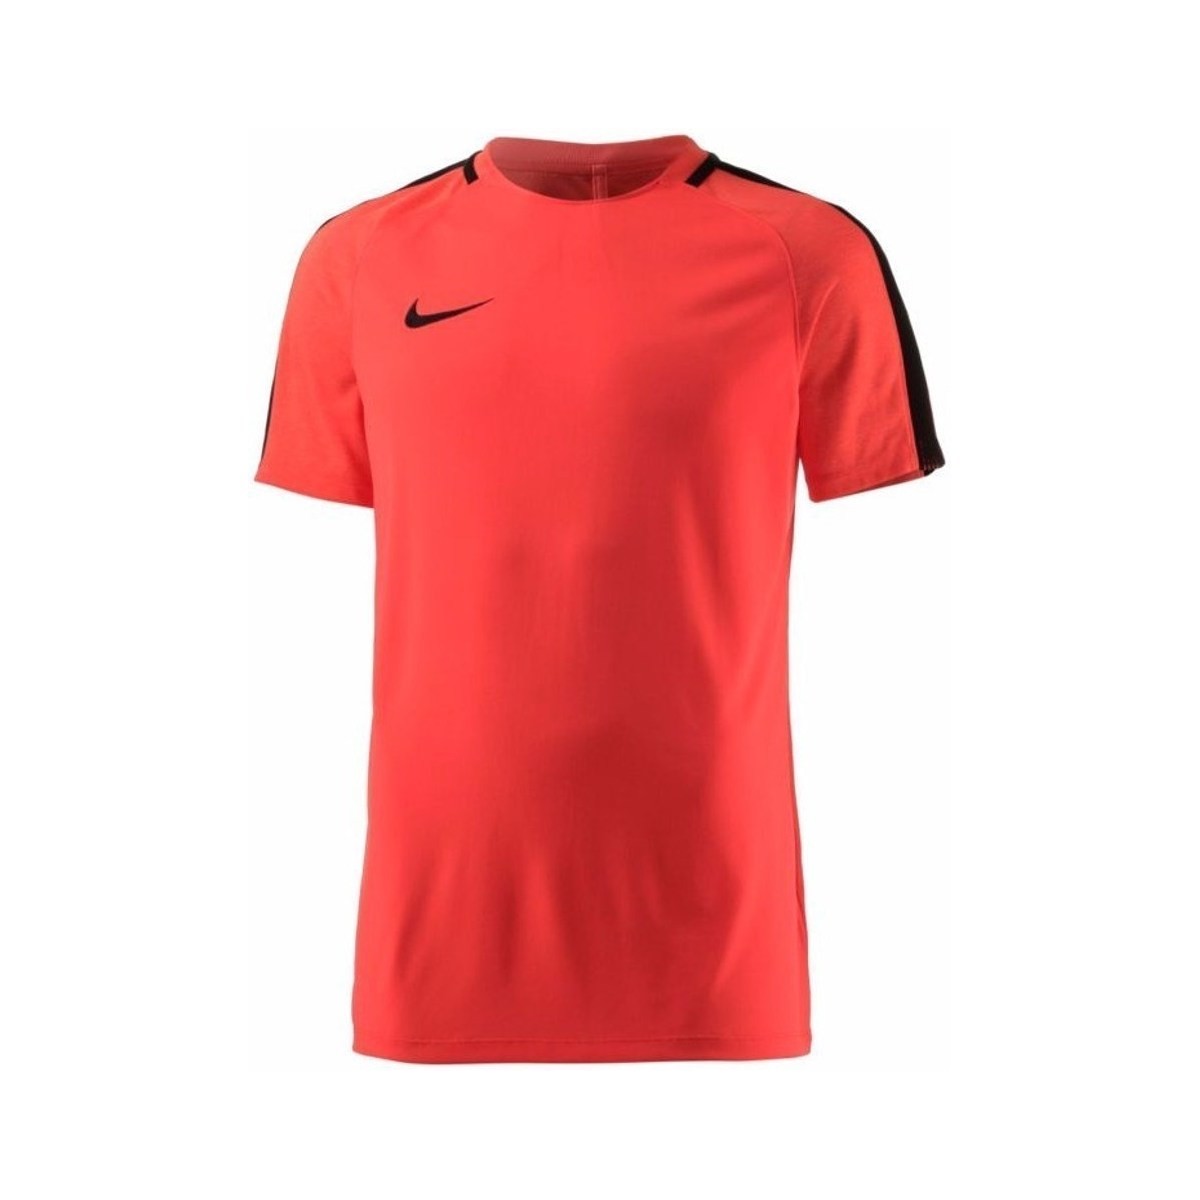 Îmbracaminte Bărbați Tricouri mânecă scurtă Nike Dry Sqd Top roșu